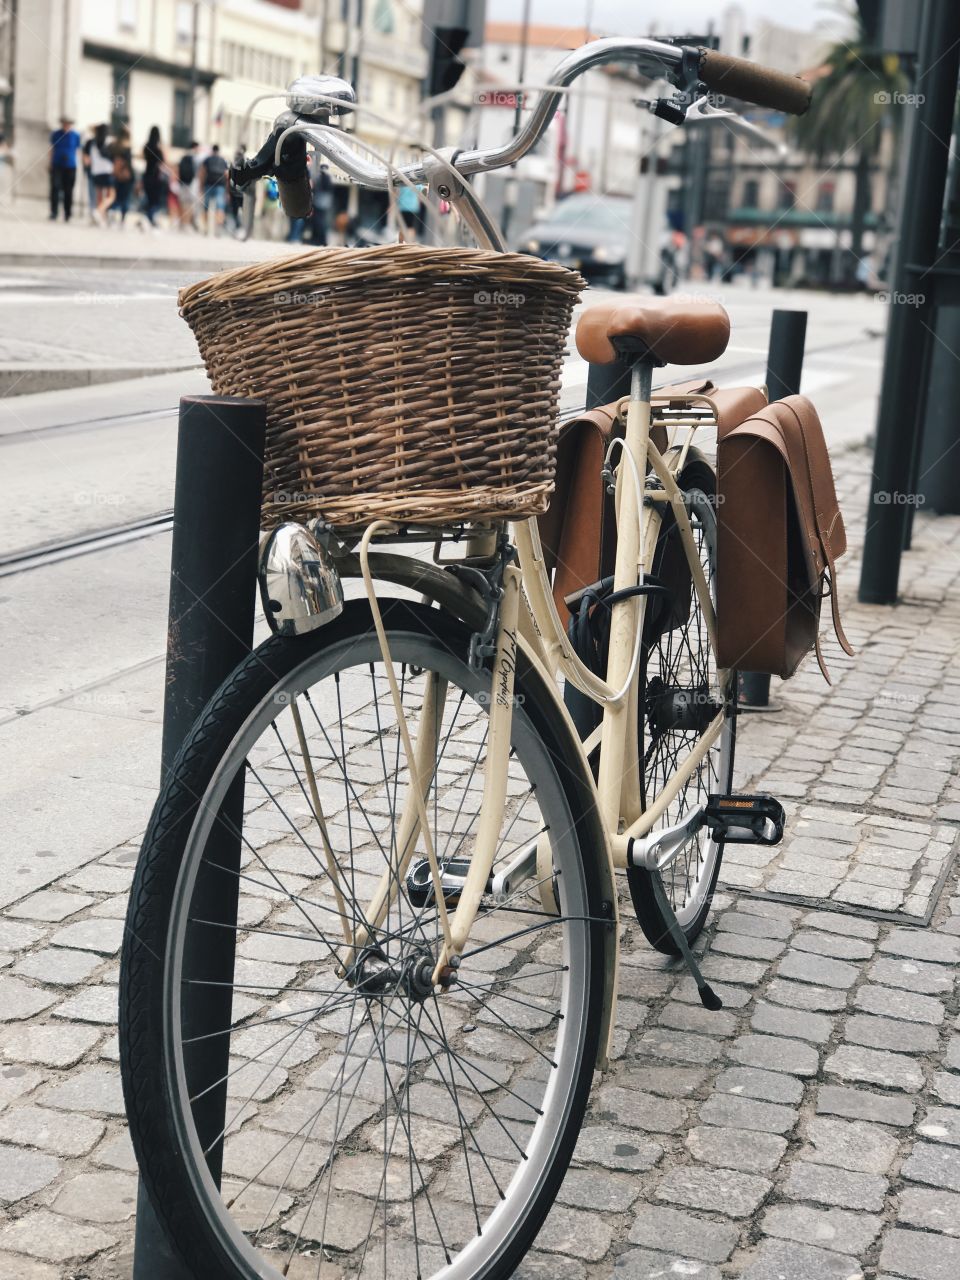 Let's take a bike ride 🚲